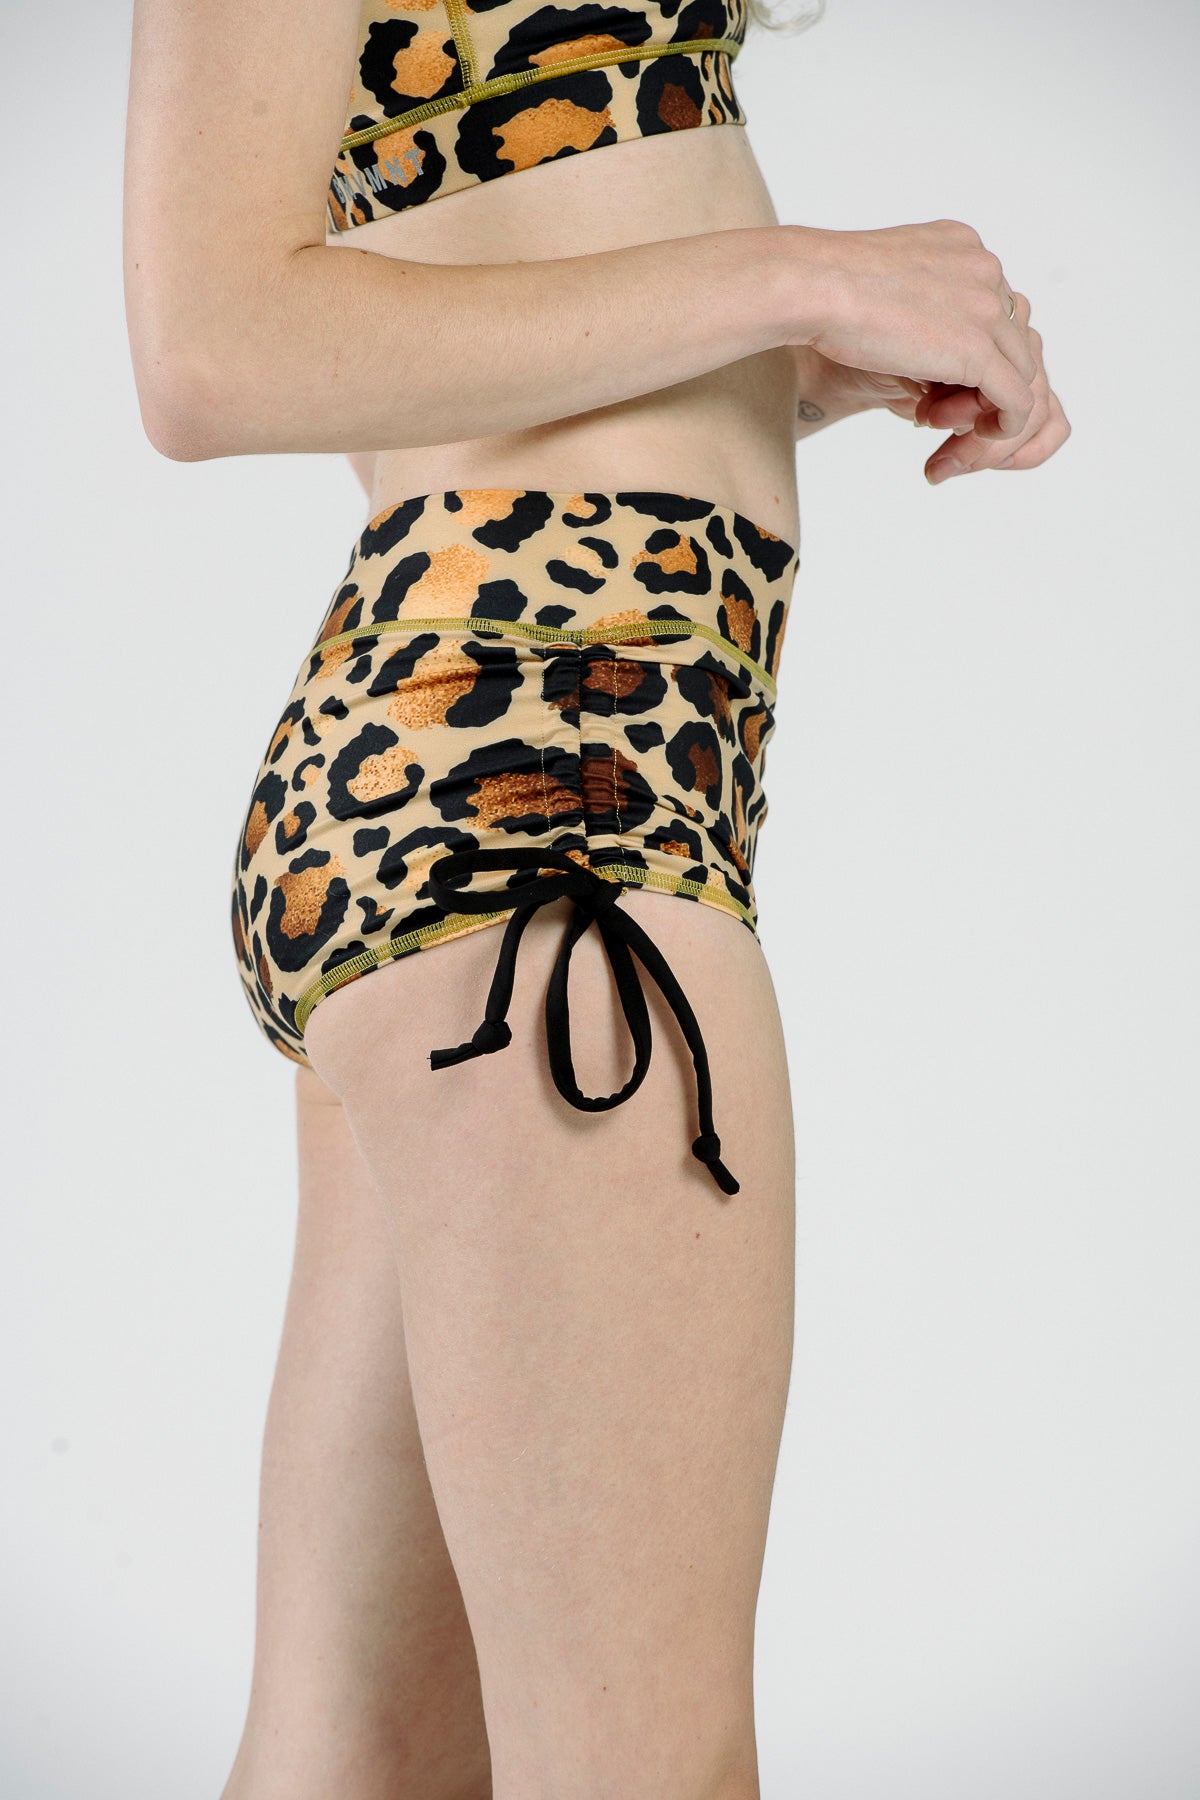 OG Side Tie Shorts - Gold + Tan Leopard